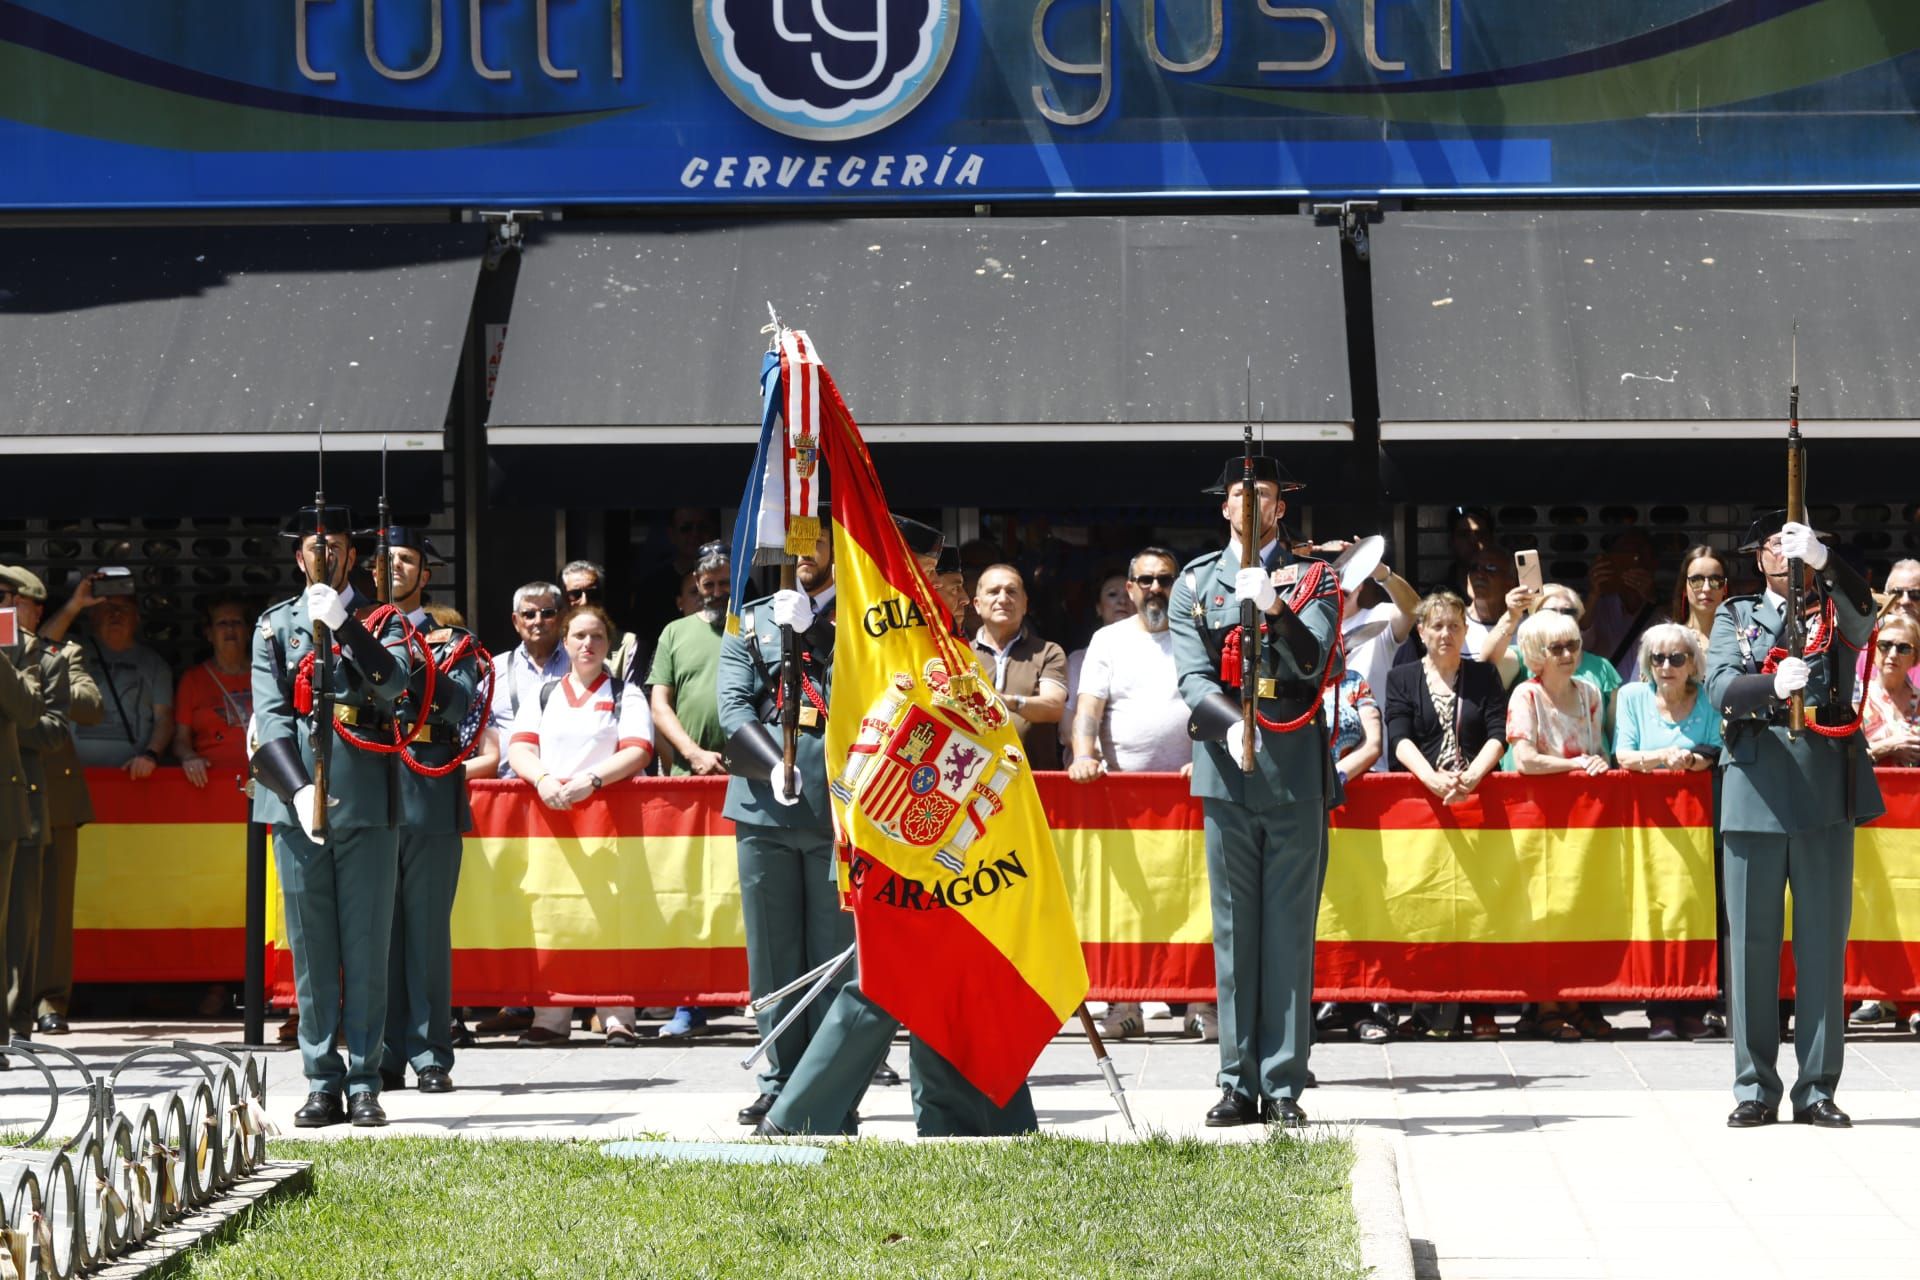 La Guardia Civil celebra su 179º aniversario en Zaragoza